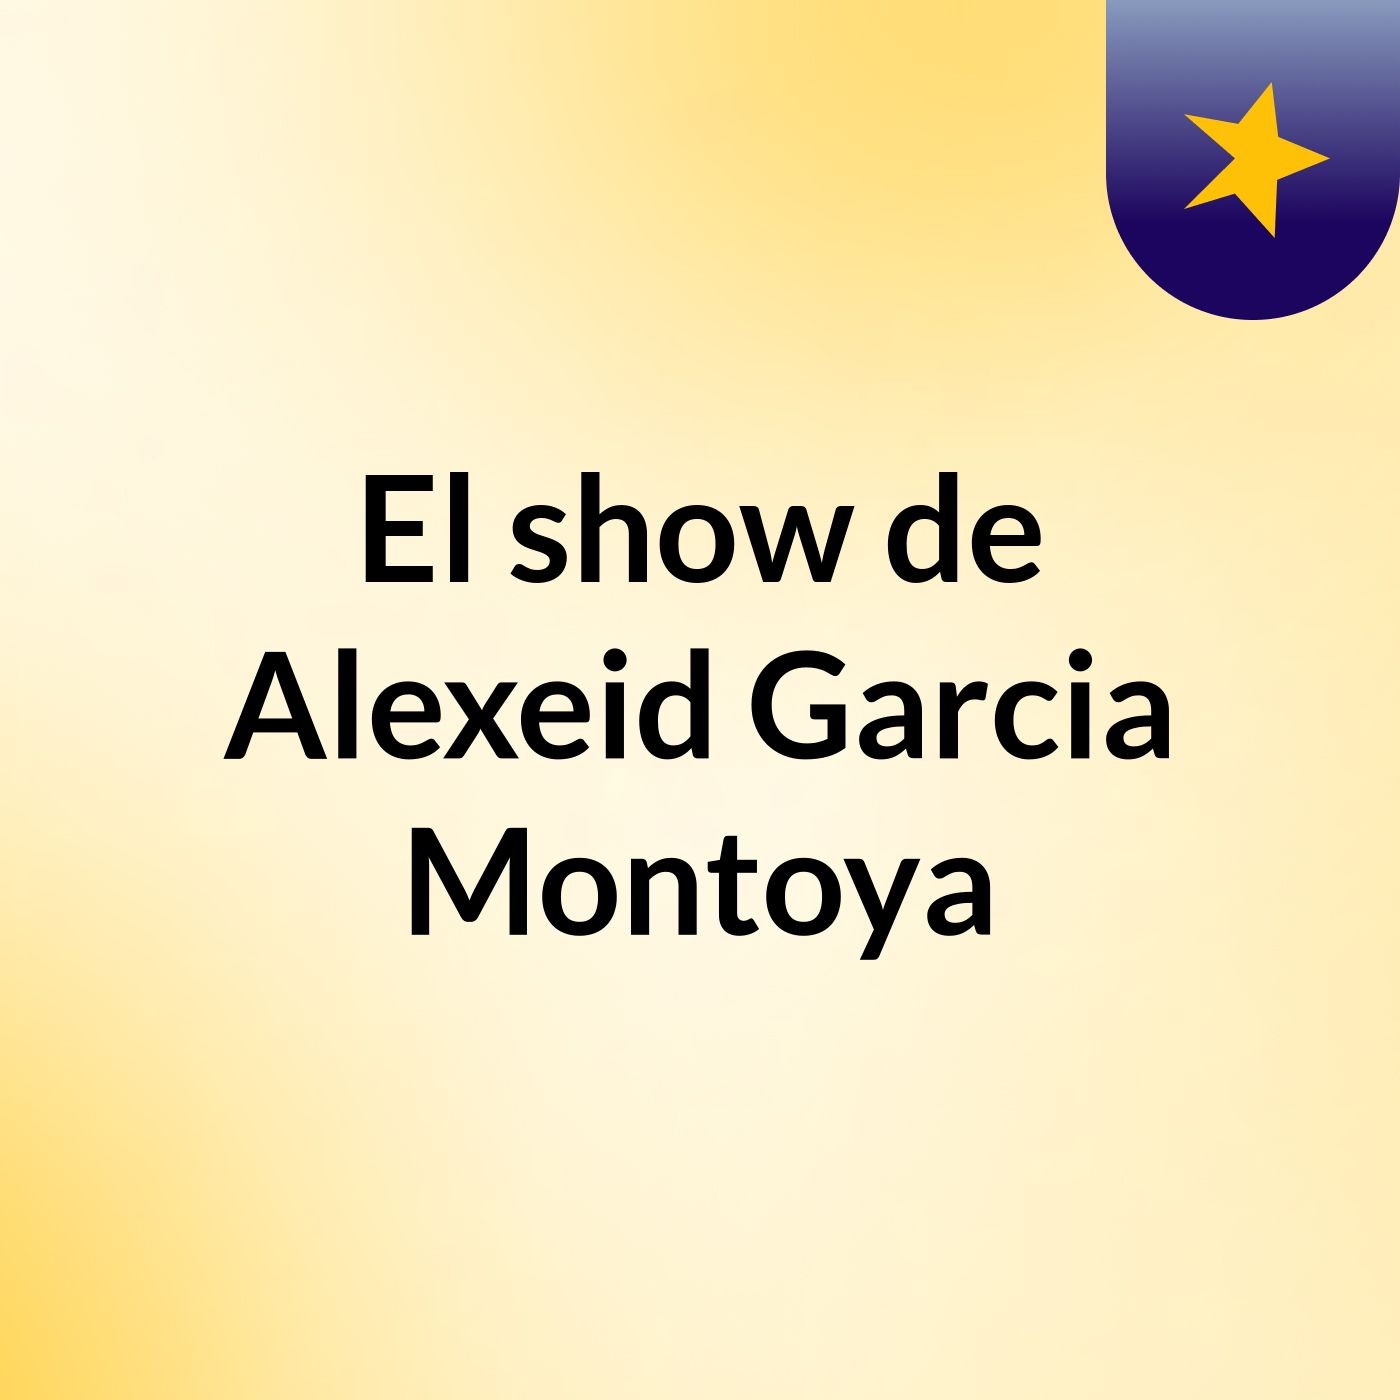 El show de Alexeid Garcia Montoya